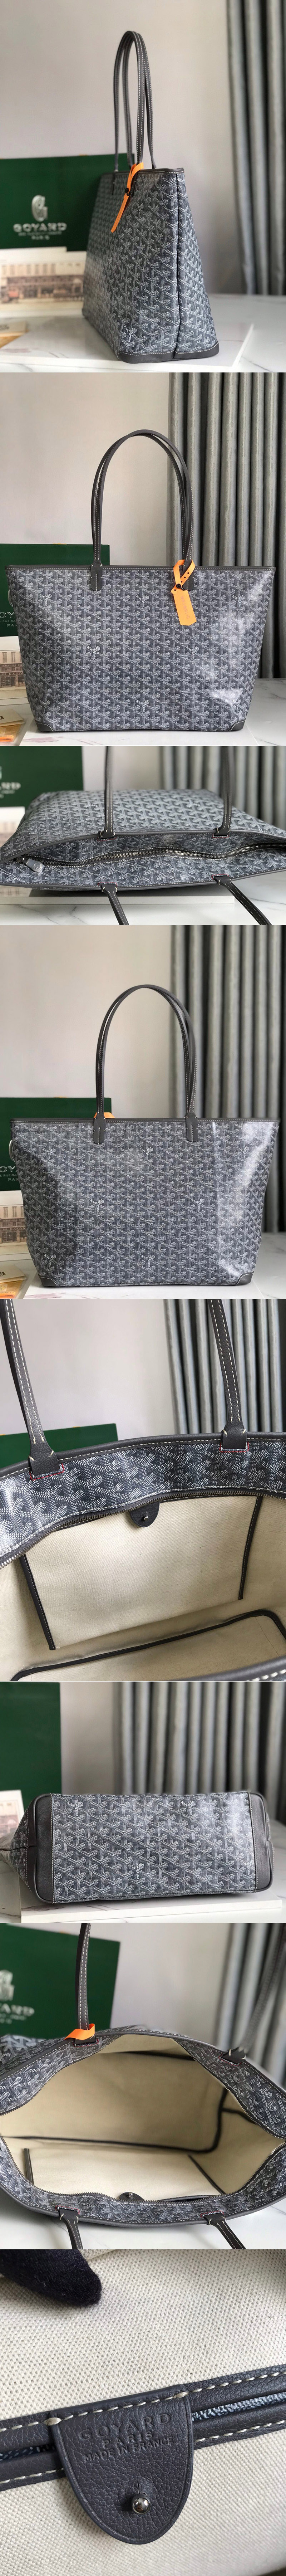 Replica Goyard Bags